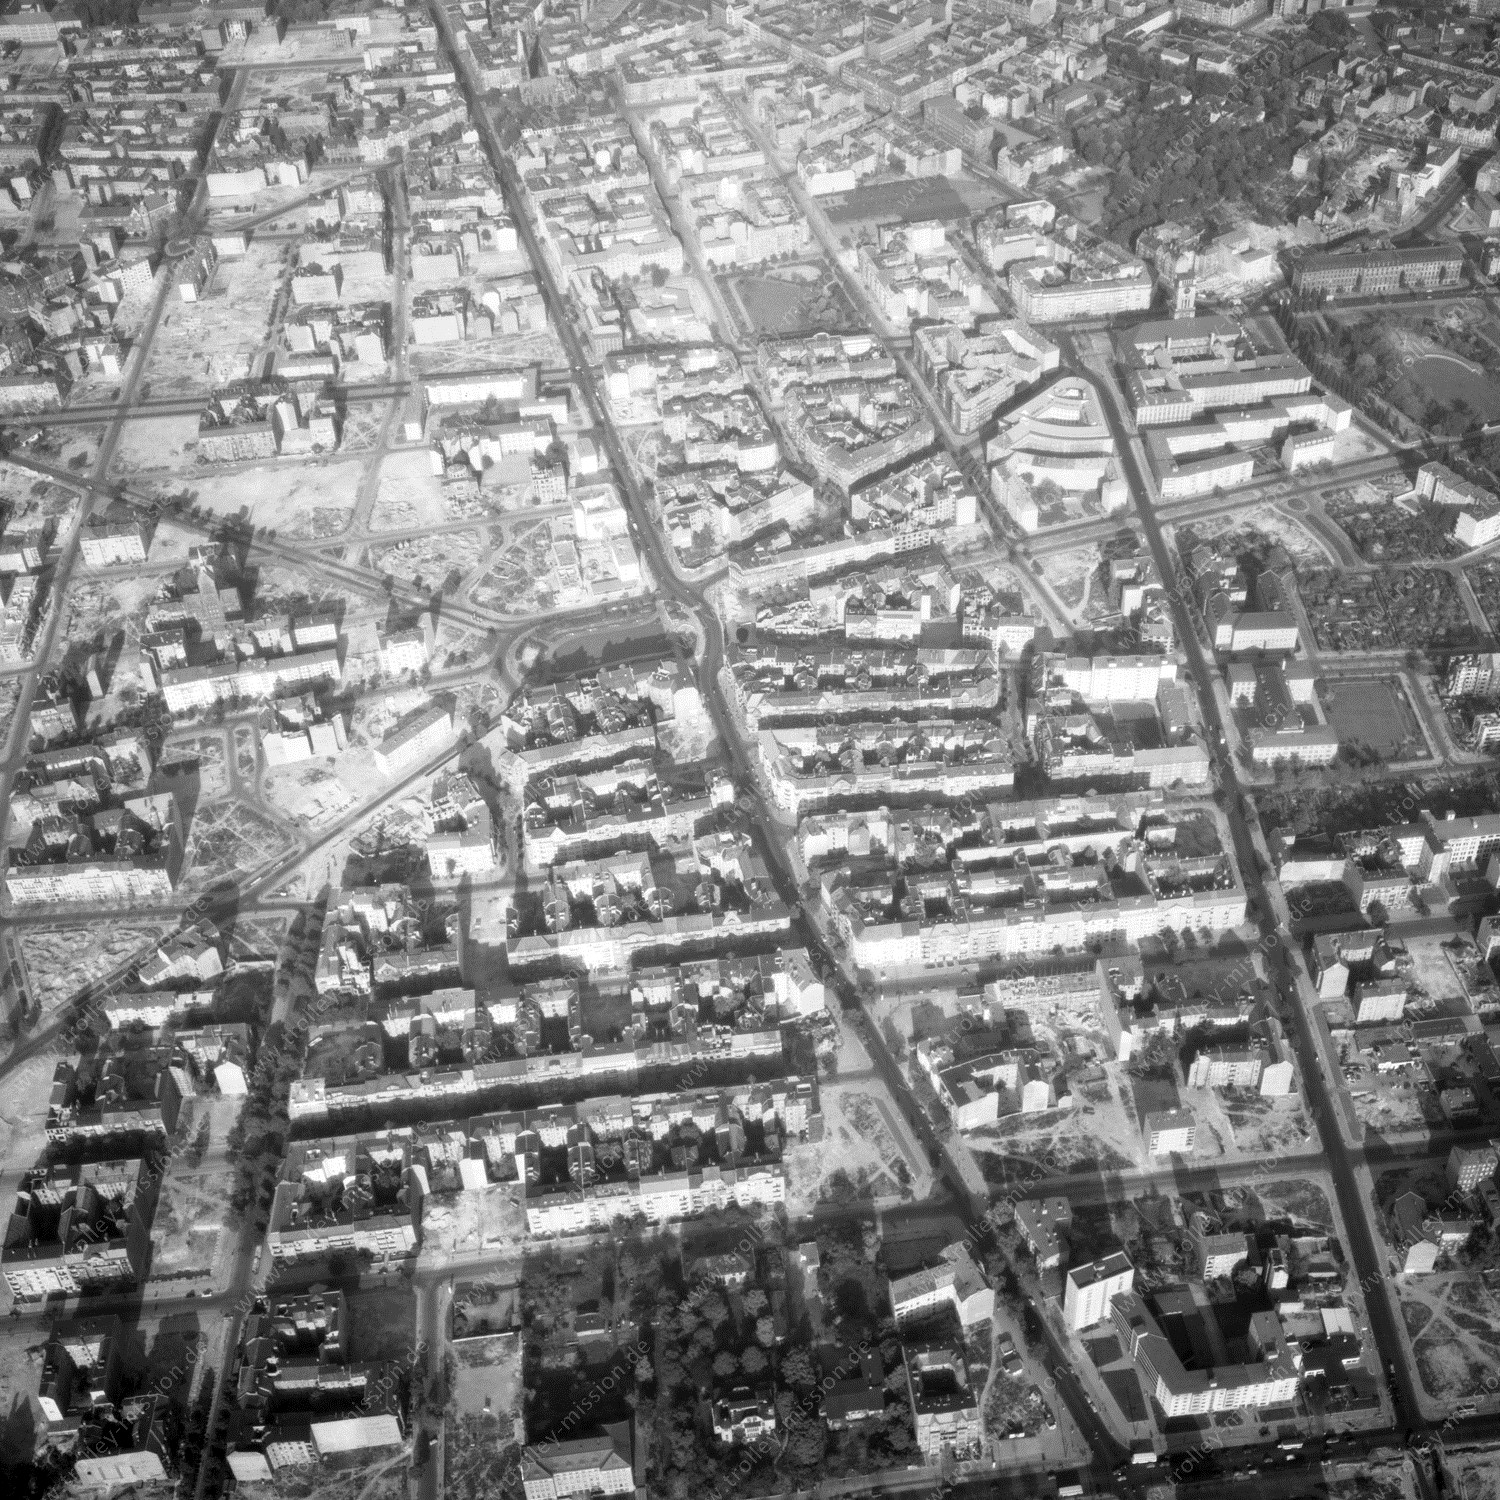 Alte Fotos und Luftbilder von Berlin - Luftbildaufnahme Nr. 04 - Historische Luftaufnahmen von West-Berlin aus dem Jahr 1954 - Flugstrecke Echo